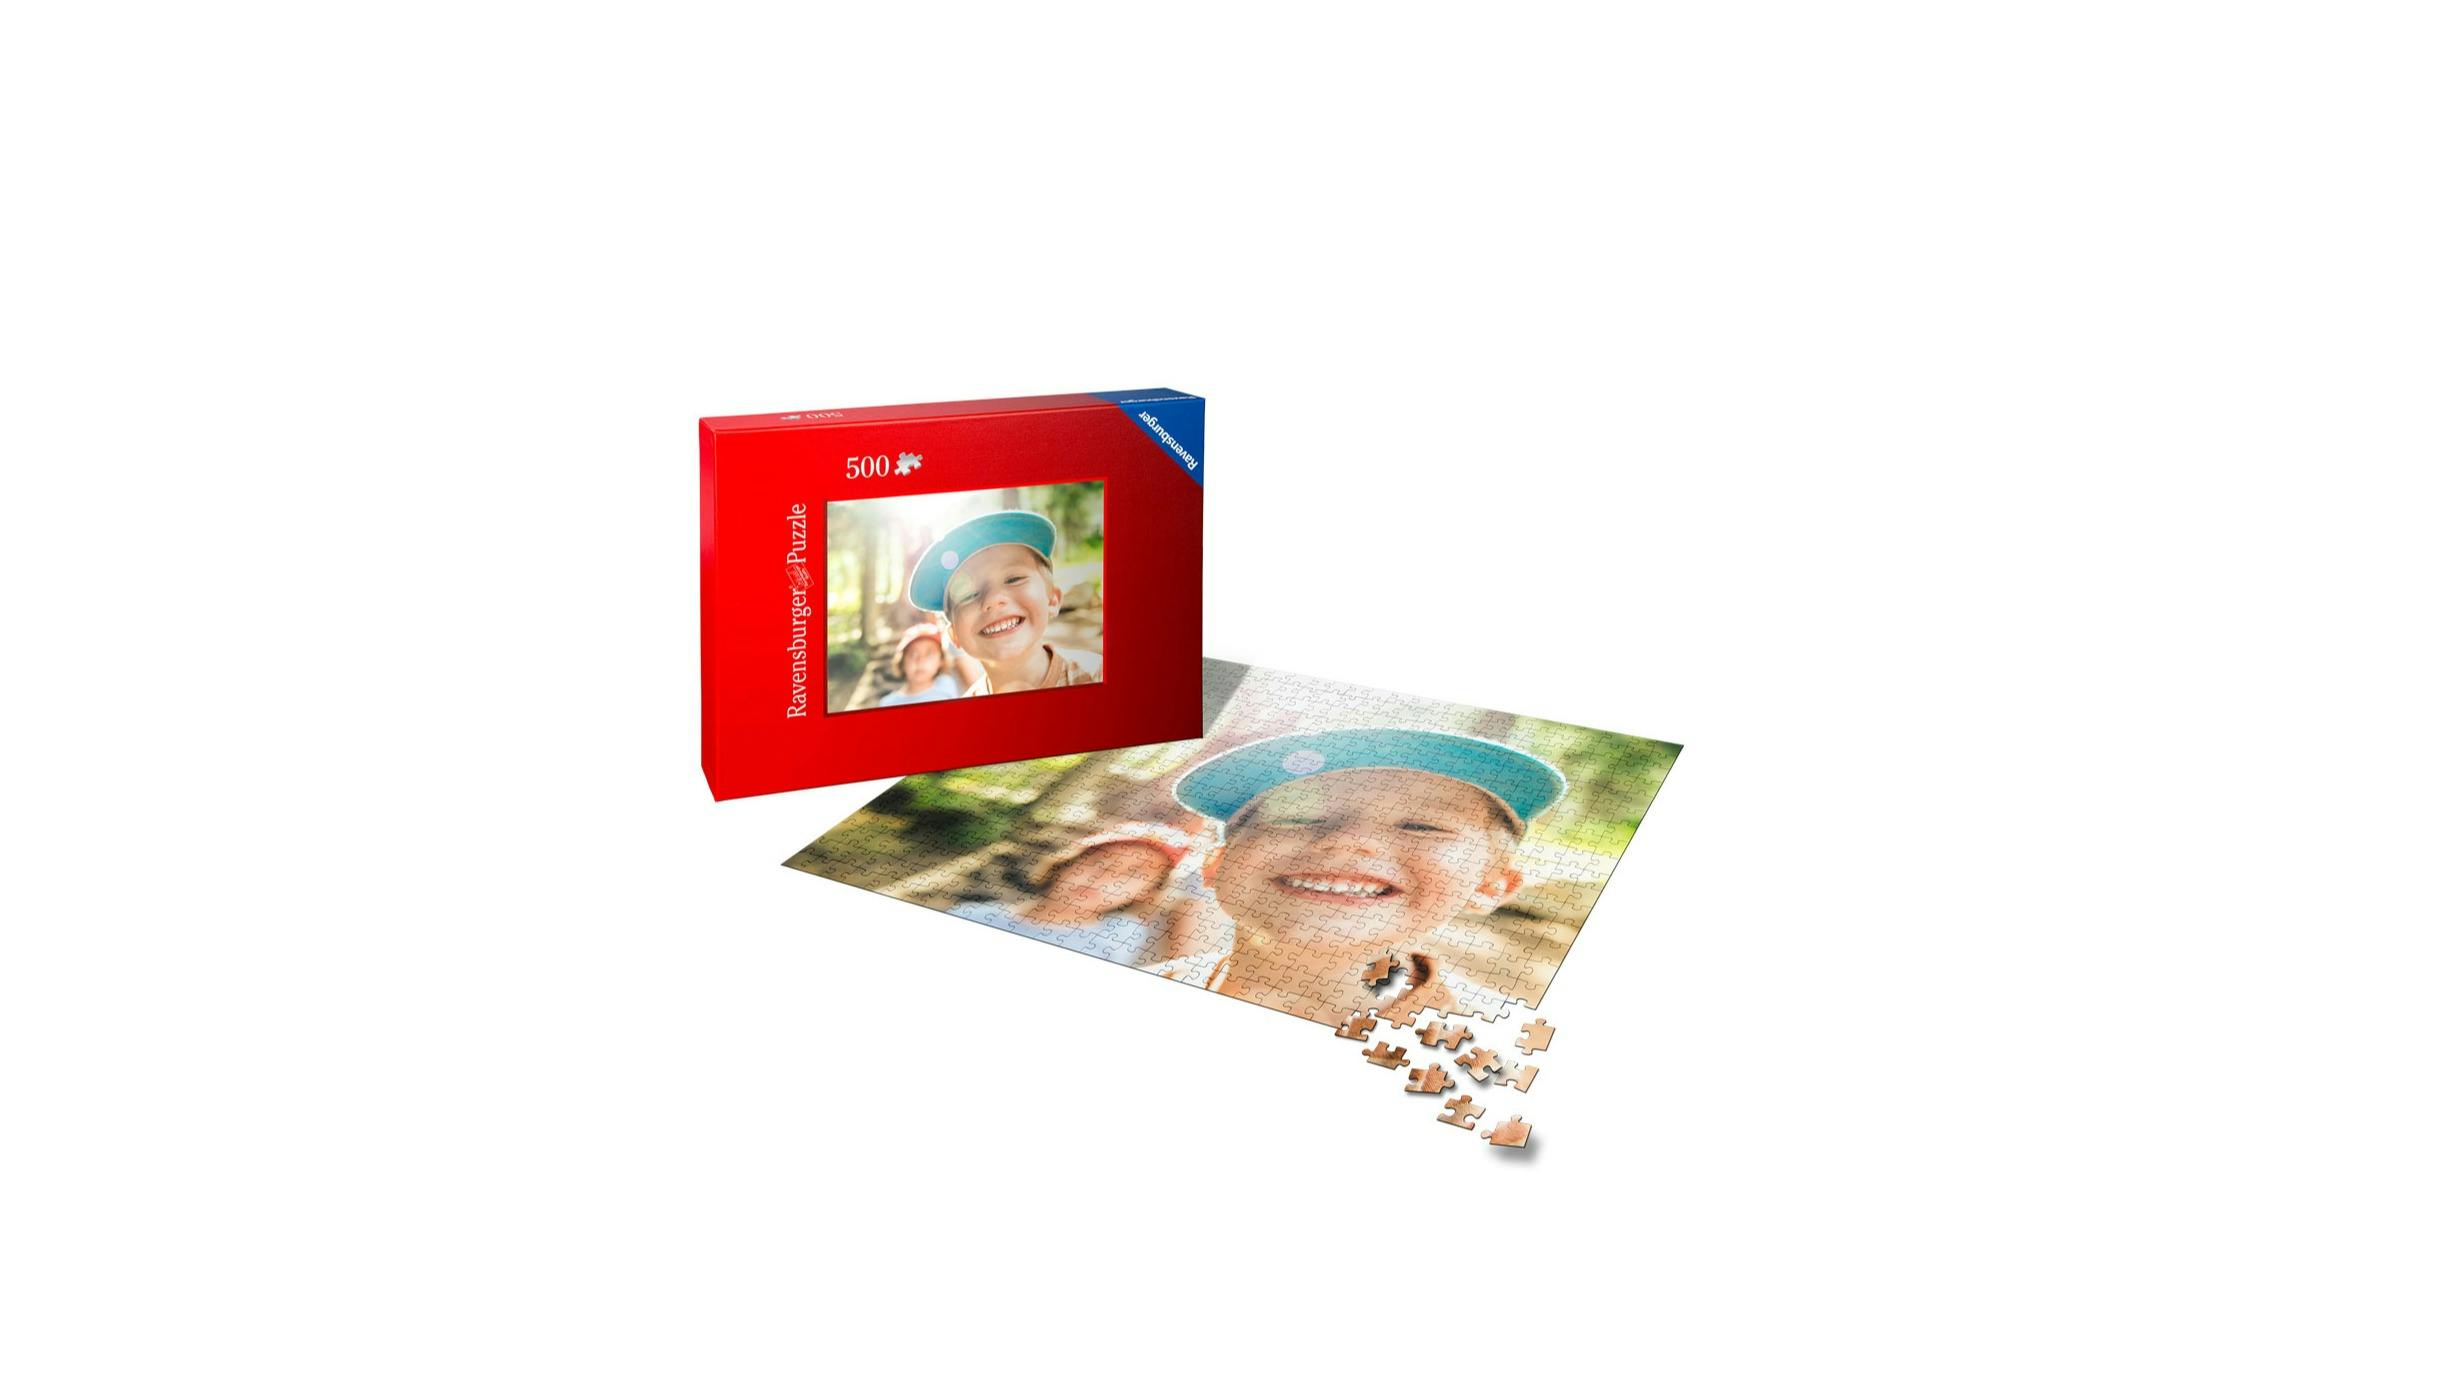 Puzzle personalizado con fotos de 500 piezas con fotos de unos niños